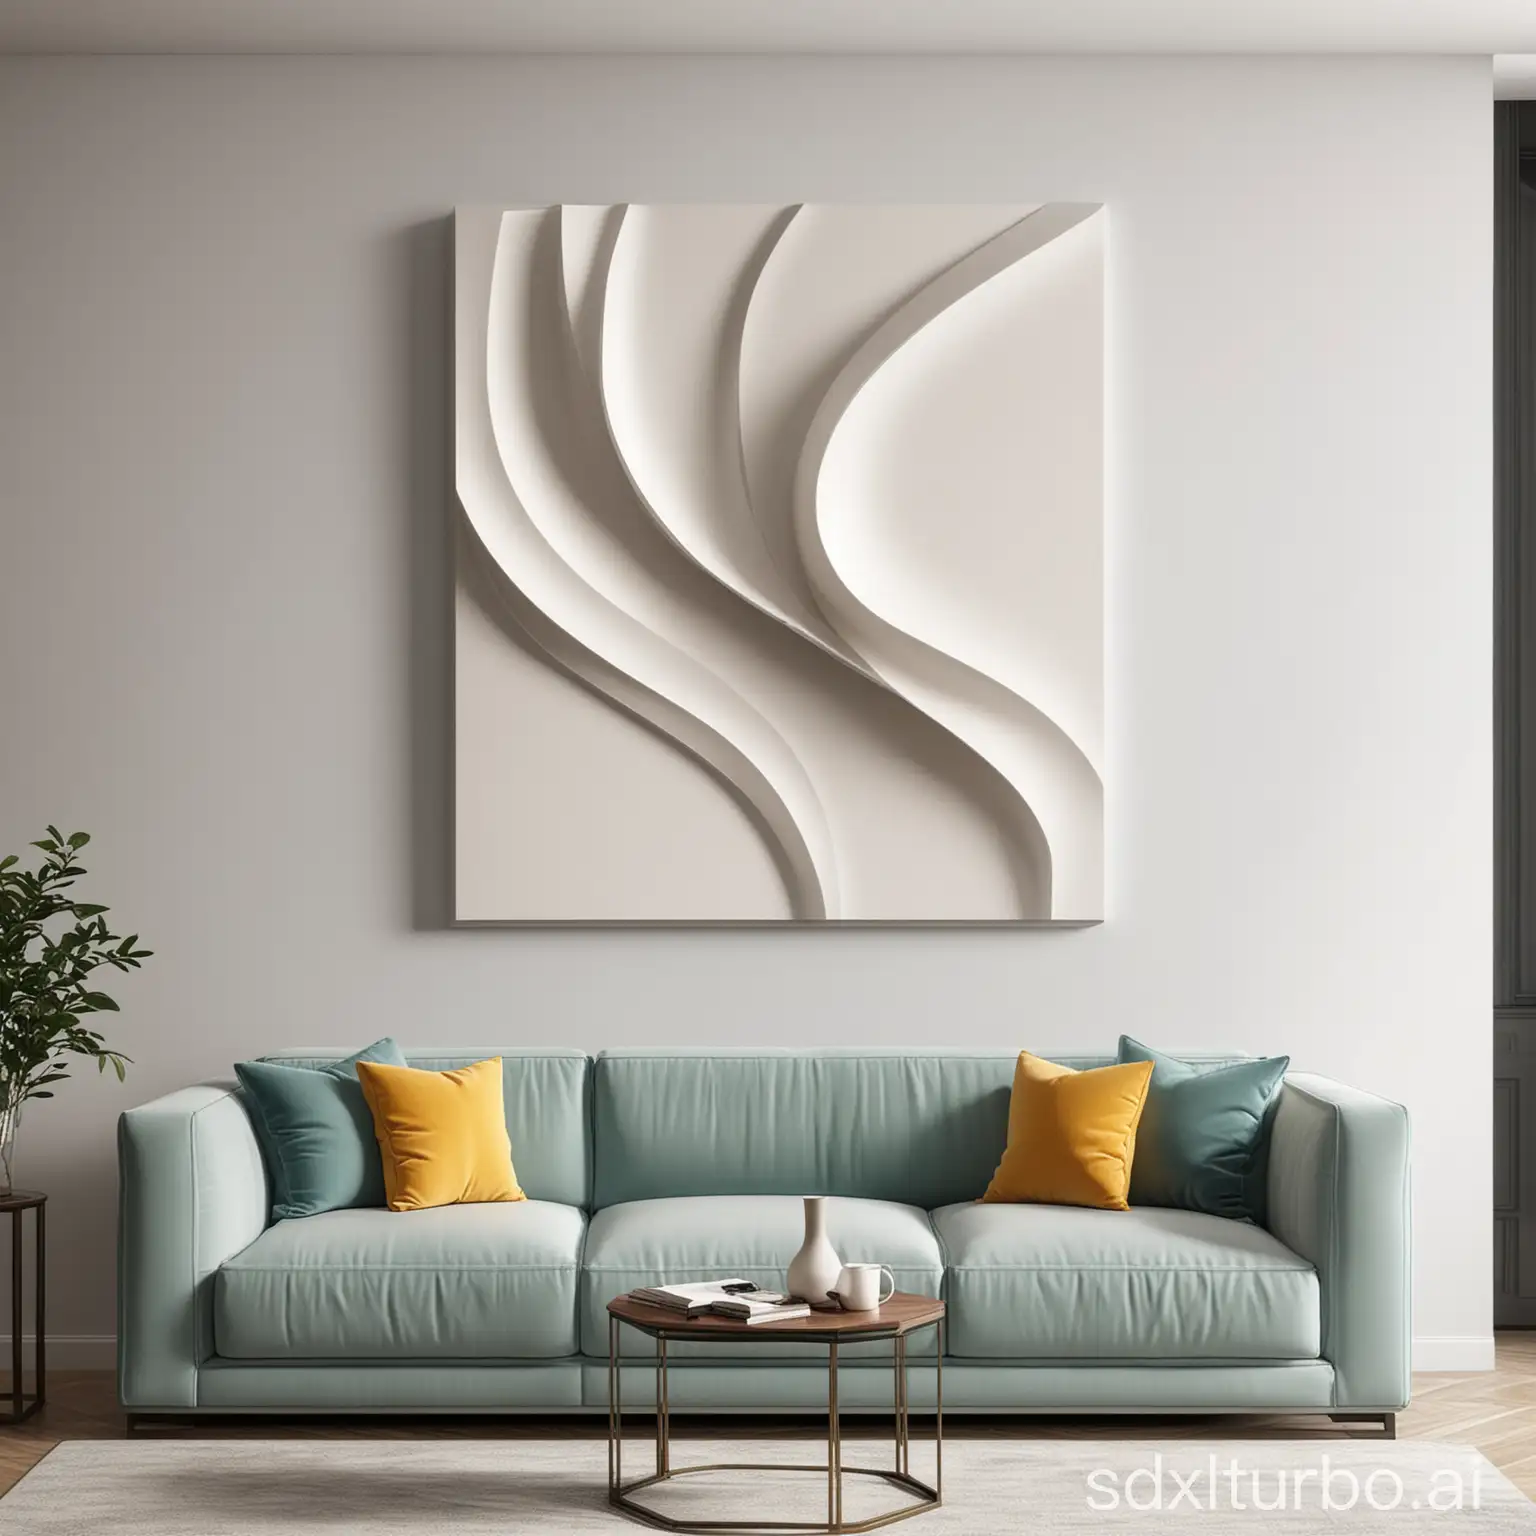 Modern-Living-Room-Abstract-Wall-Art-Sculpture